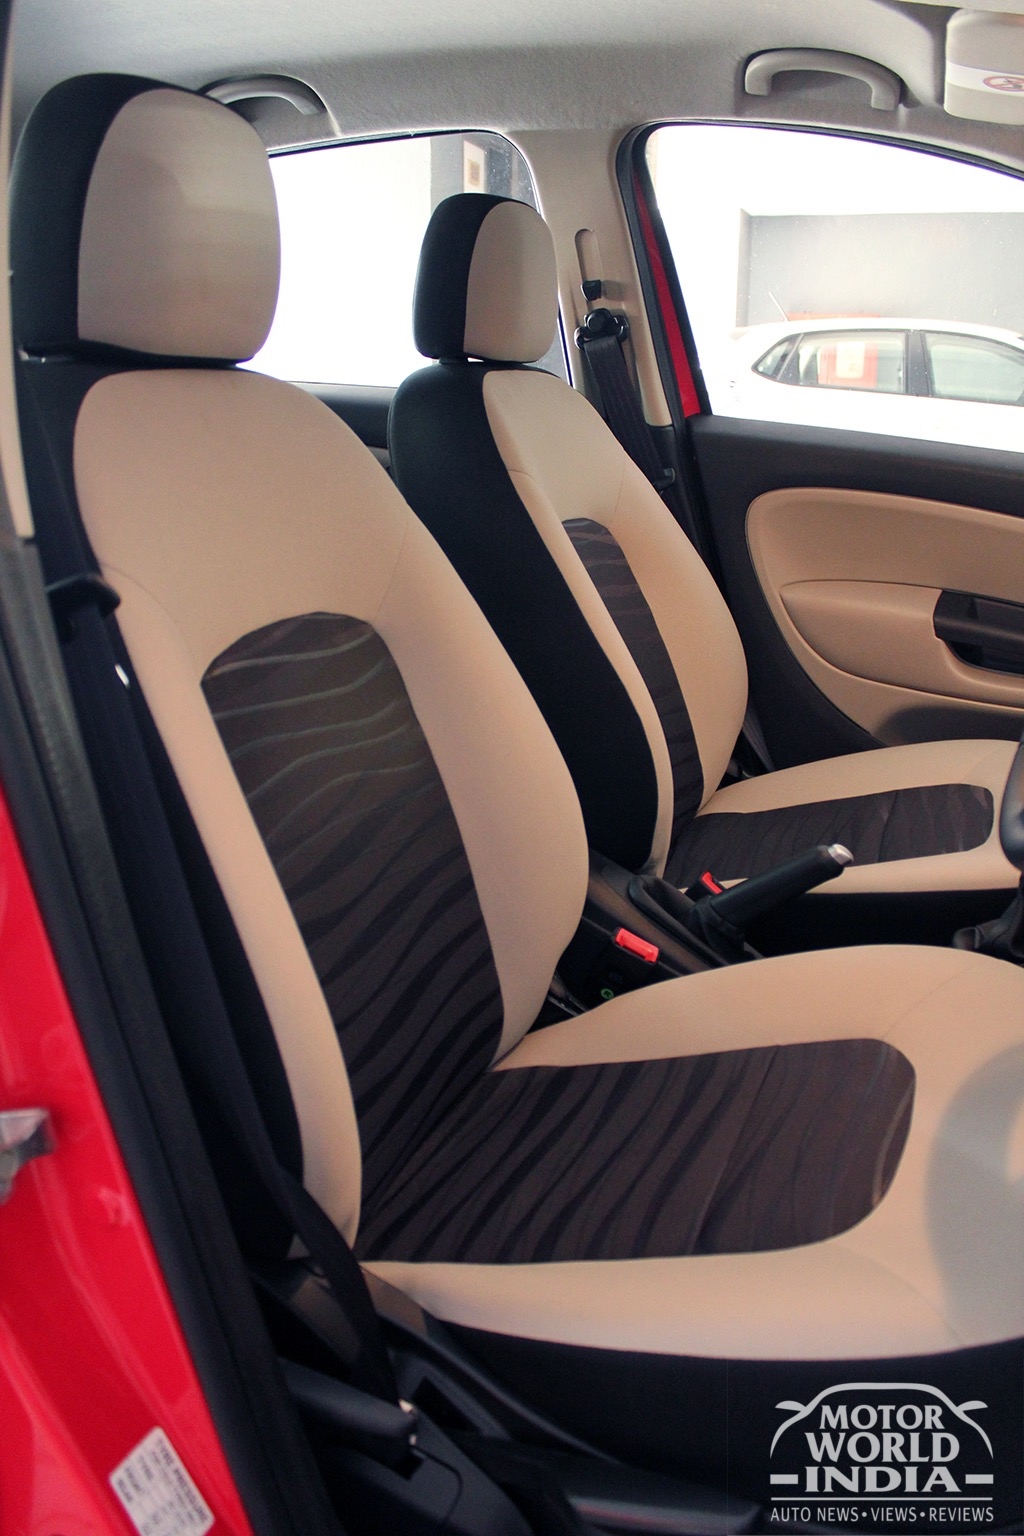 Fiat-Avventura-Urban-Cross-Interior-Seats (2)